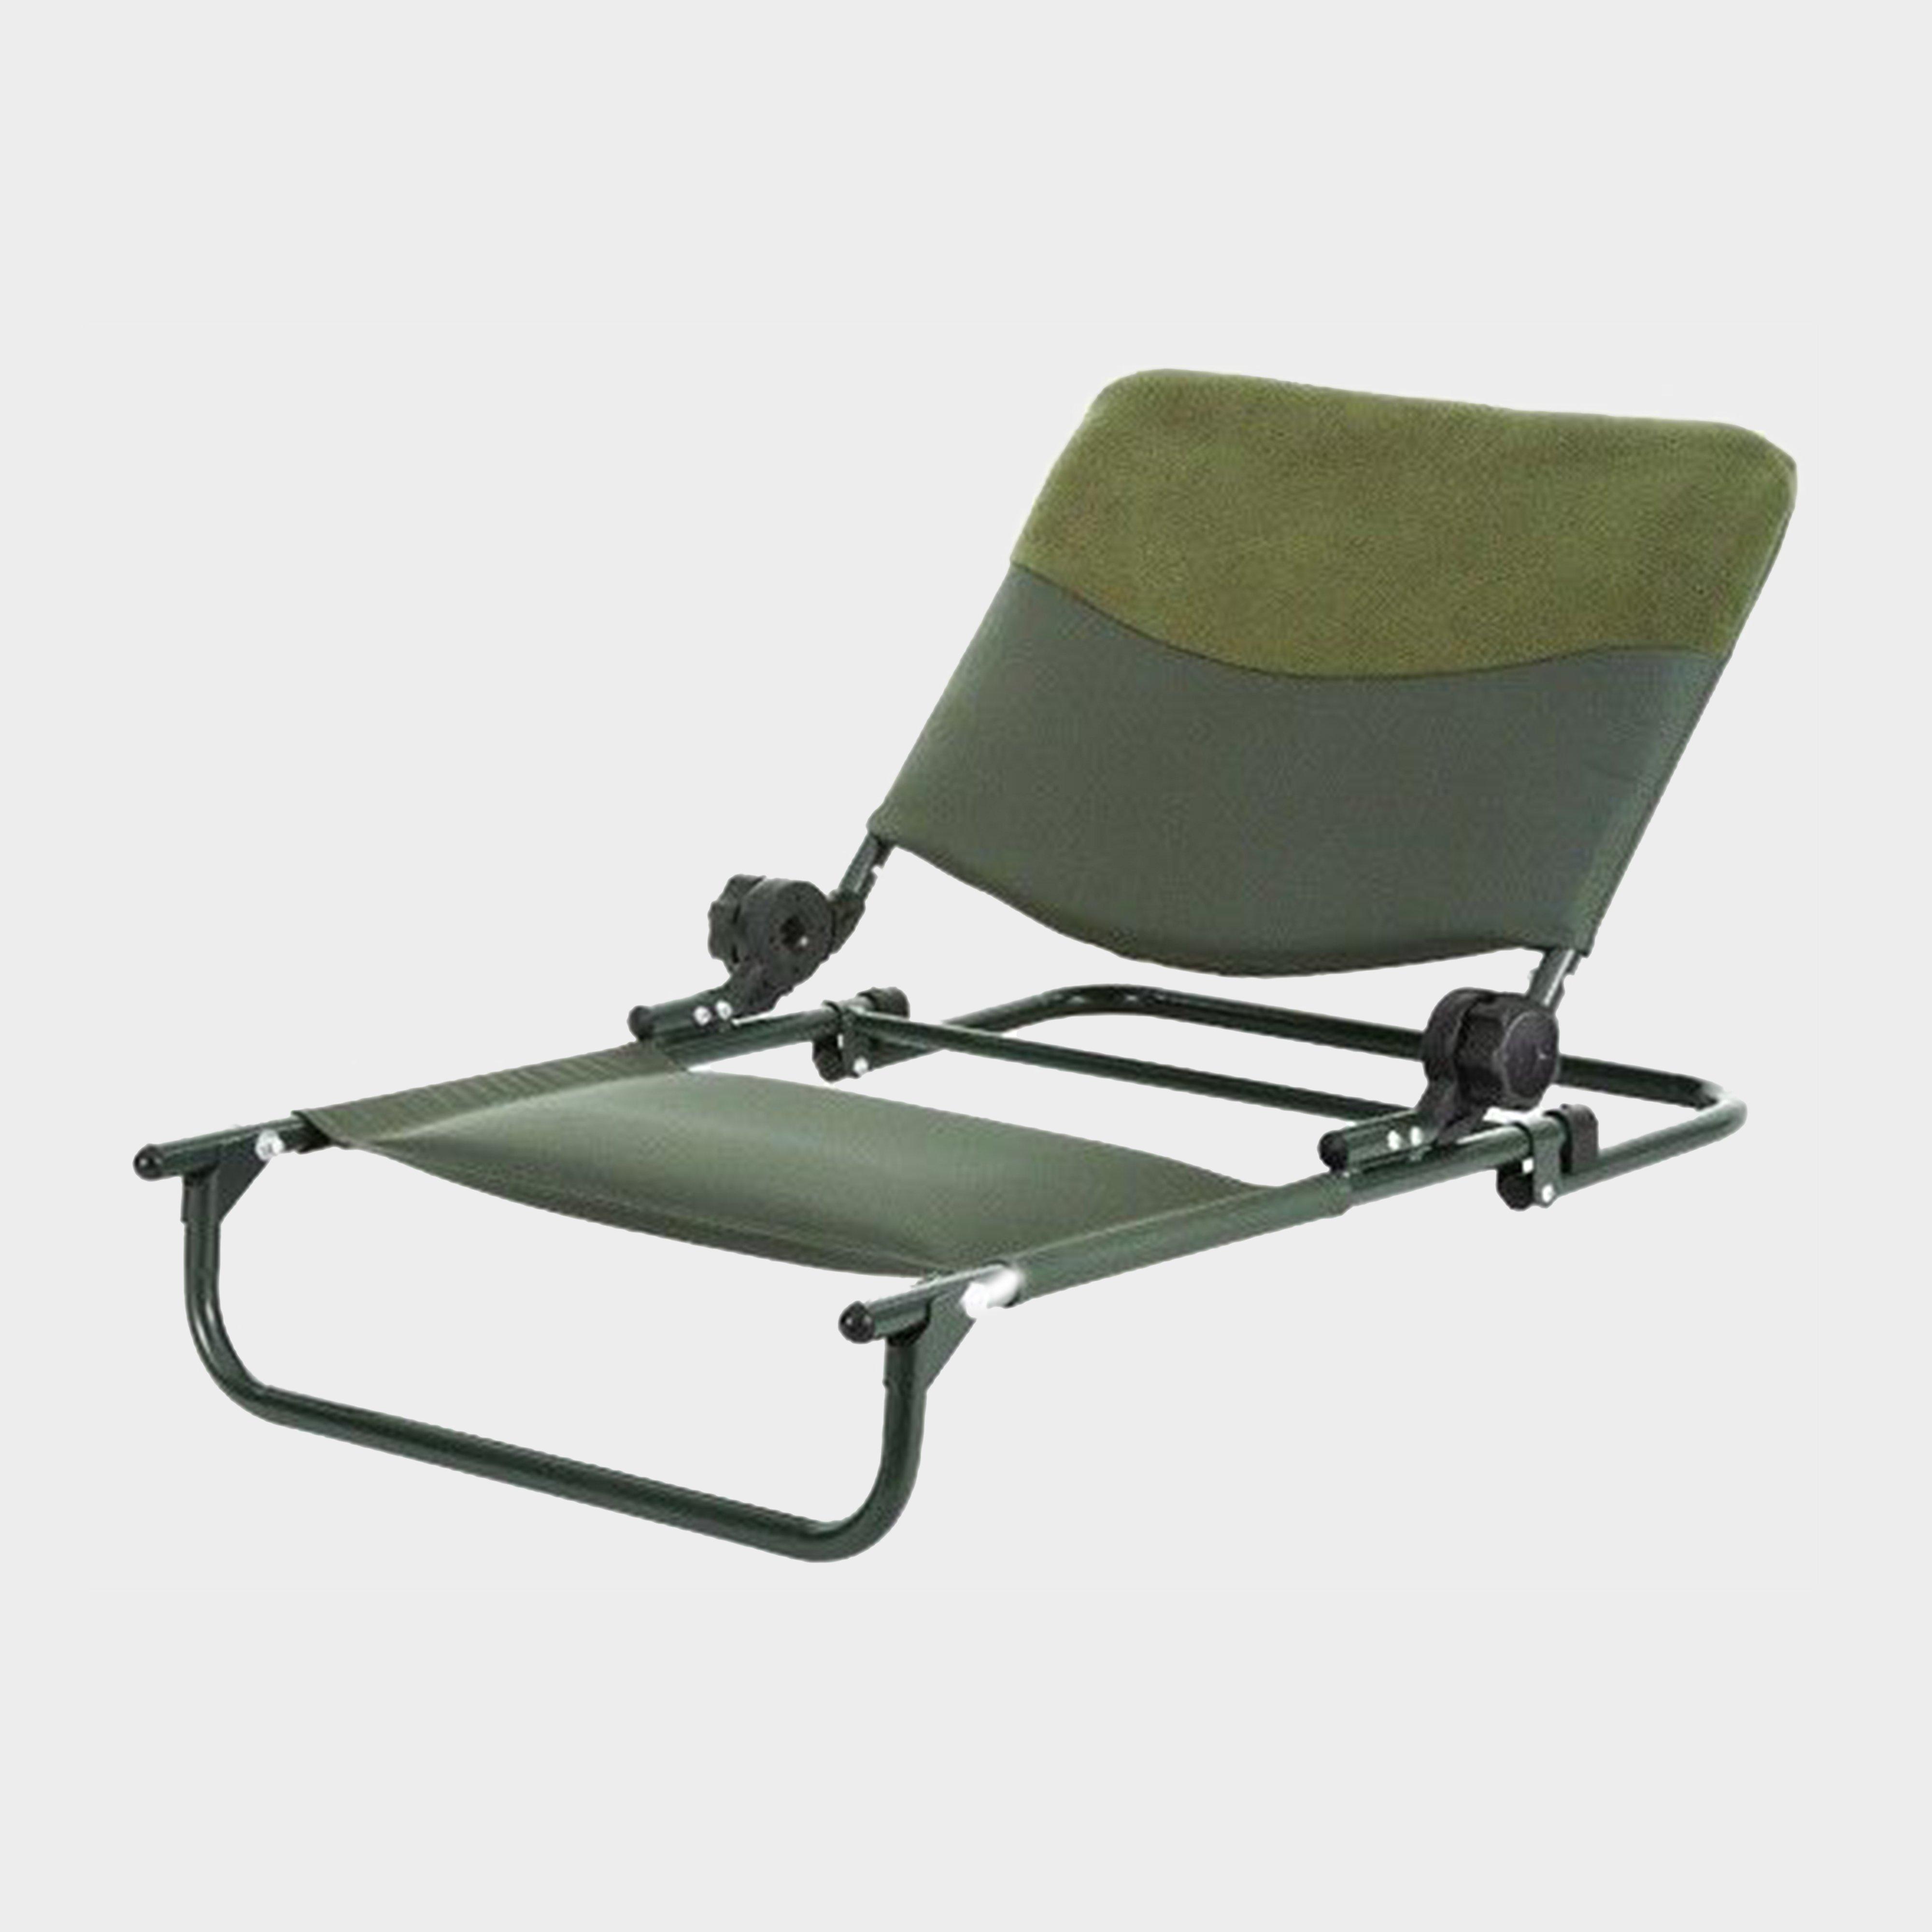  Trakker RLX Bedchair Seat